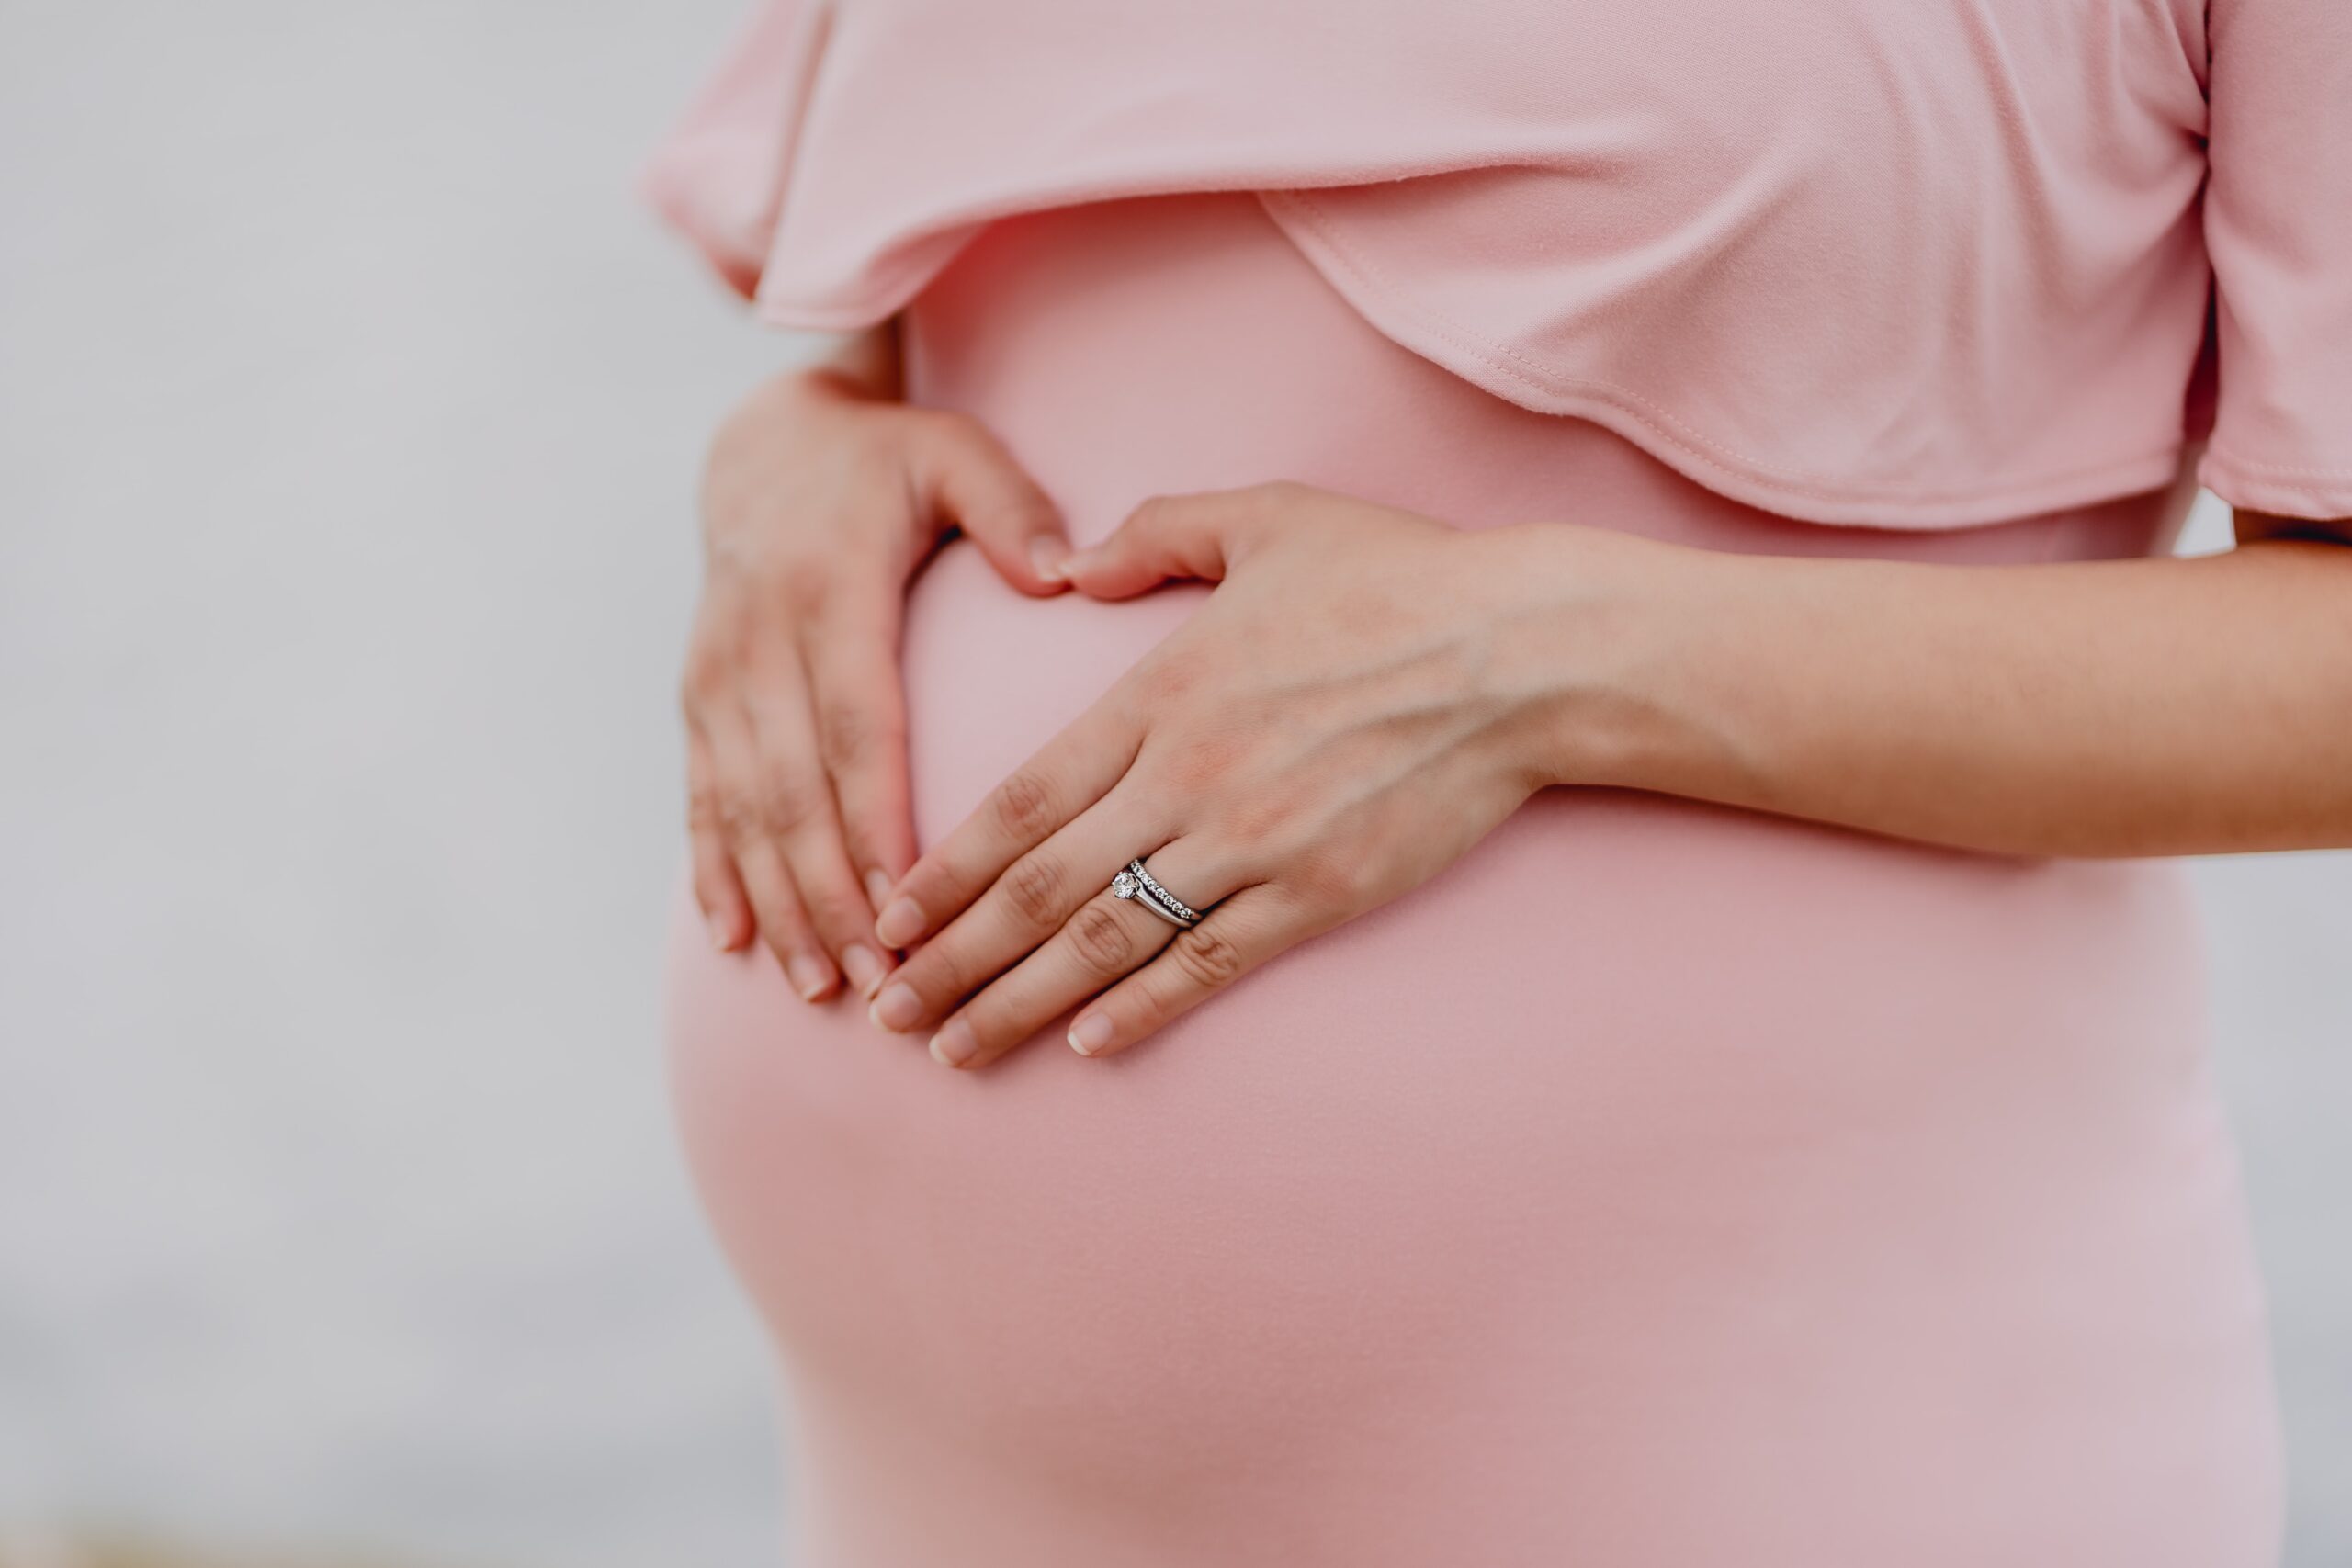 妊娠中はコロナ症状が重く、中期以降の方が症状が重くなる傾向に